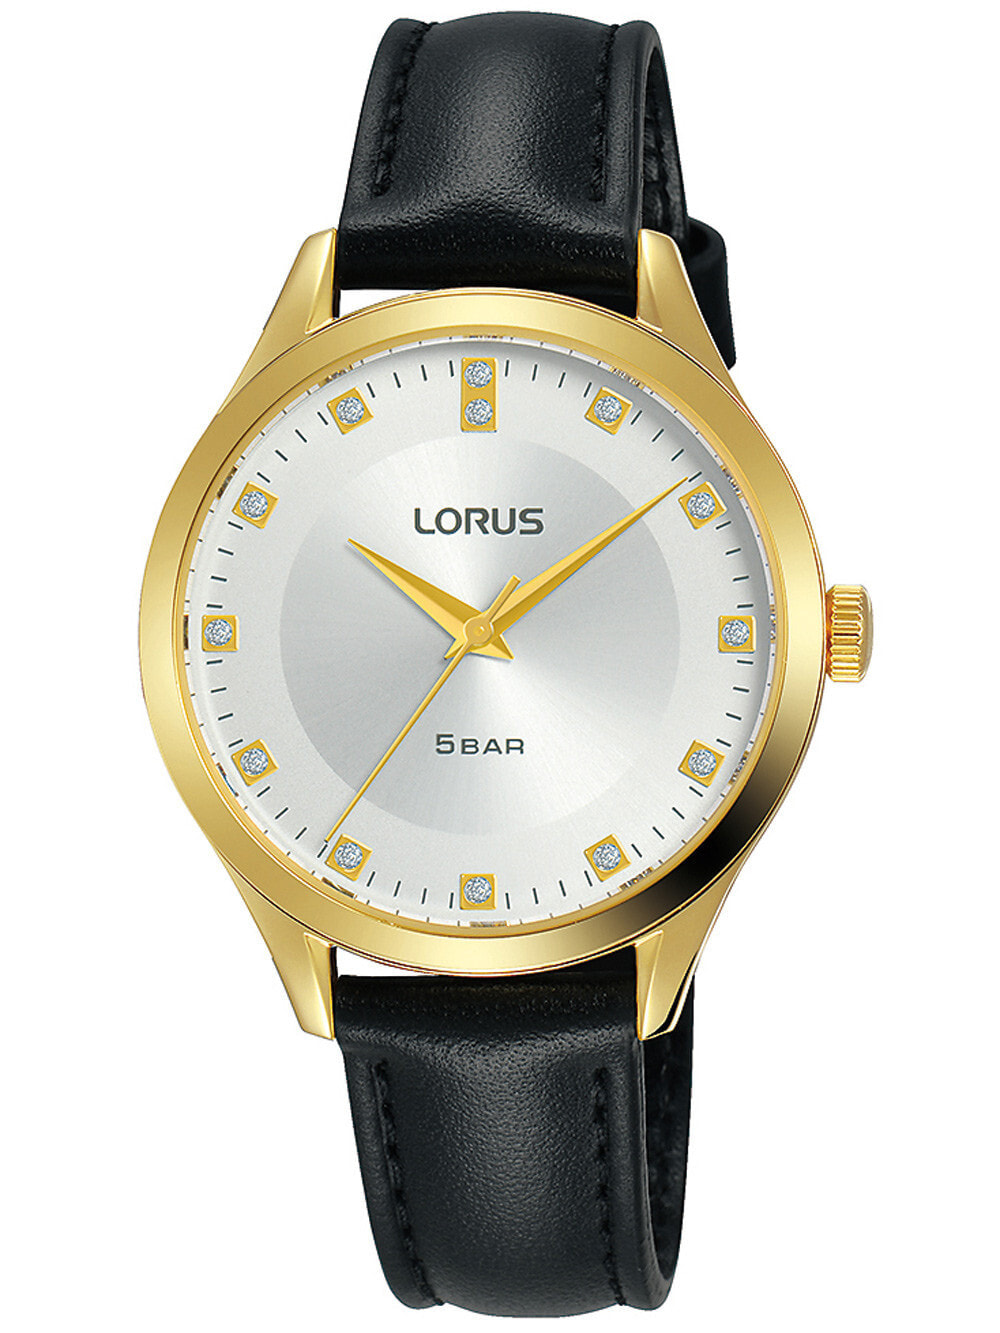 Женские наручные кварцевые часы LORUS ремешок из телячьей кожи. Водонепроницаемость-5 АТМ. Прочное, минеральное стекло. Циферблат декорирован кристалами.